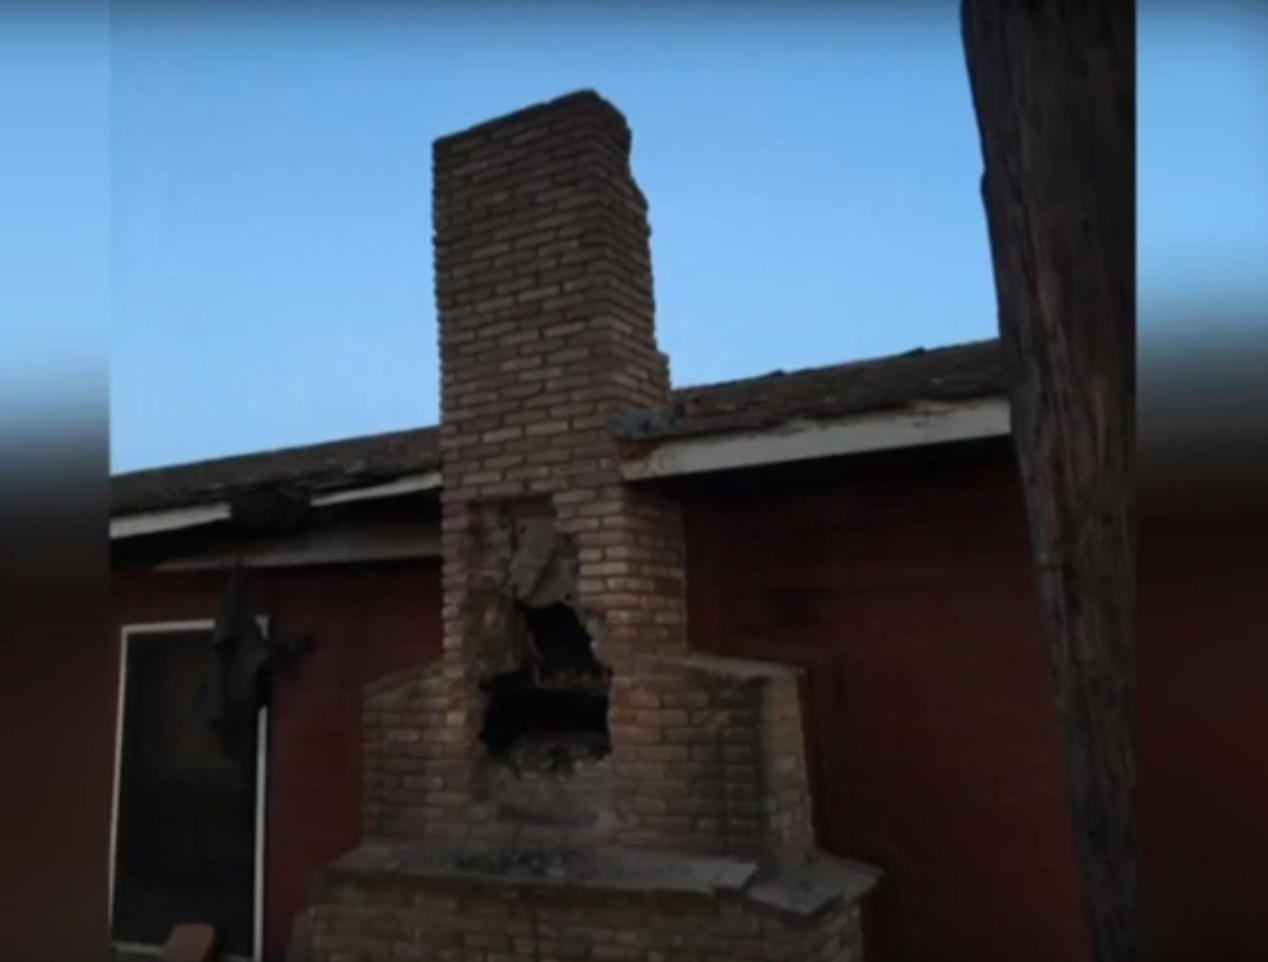 Cody caldwell chimney burglary death